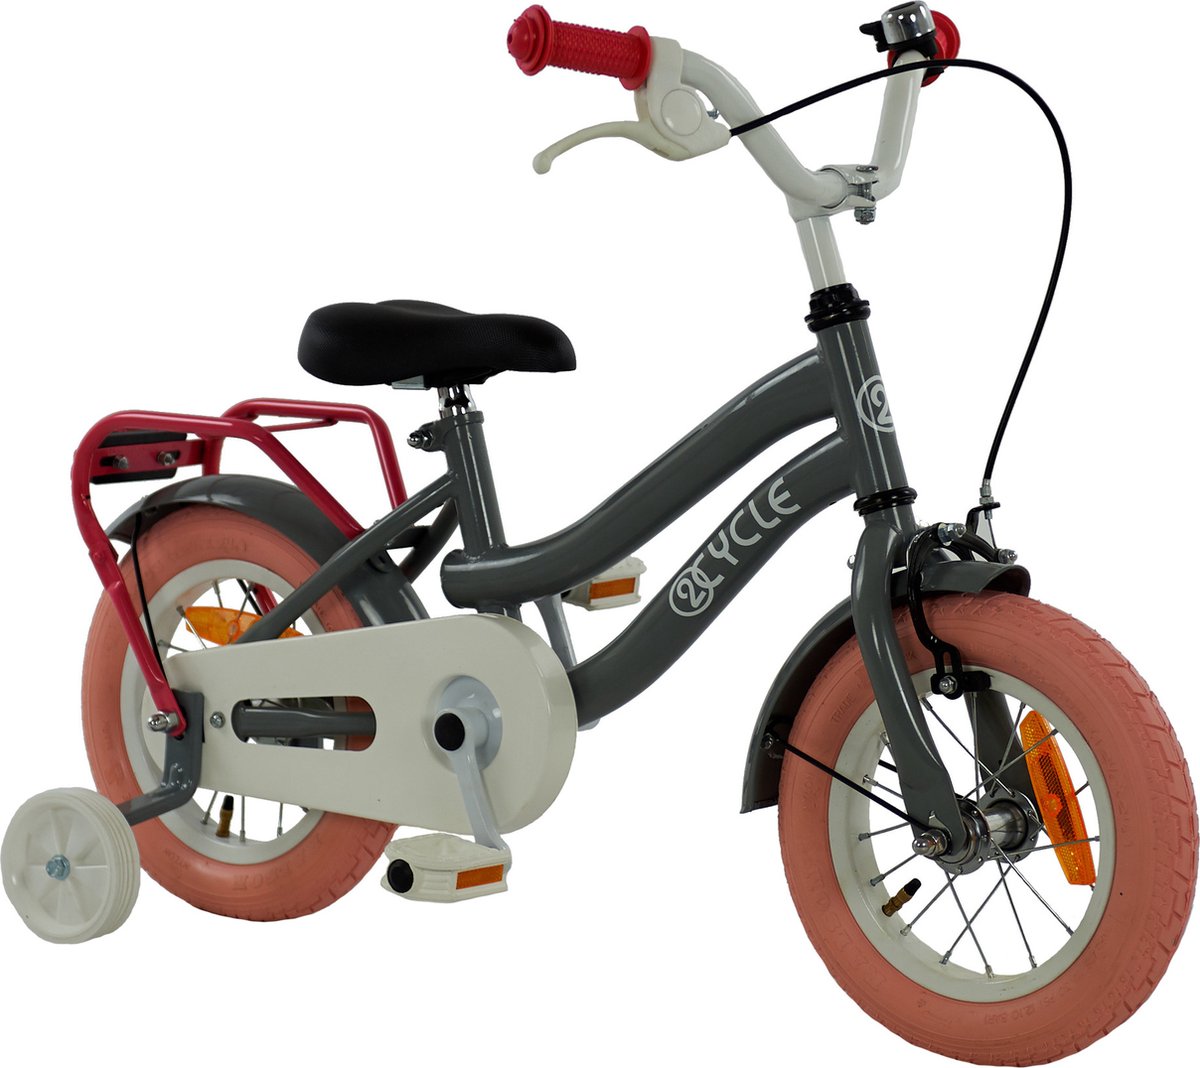 2Cycle Pretty - Kinderfiets - 12 inch - Grijs-Roze - Meisjesfiets | bol.com